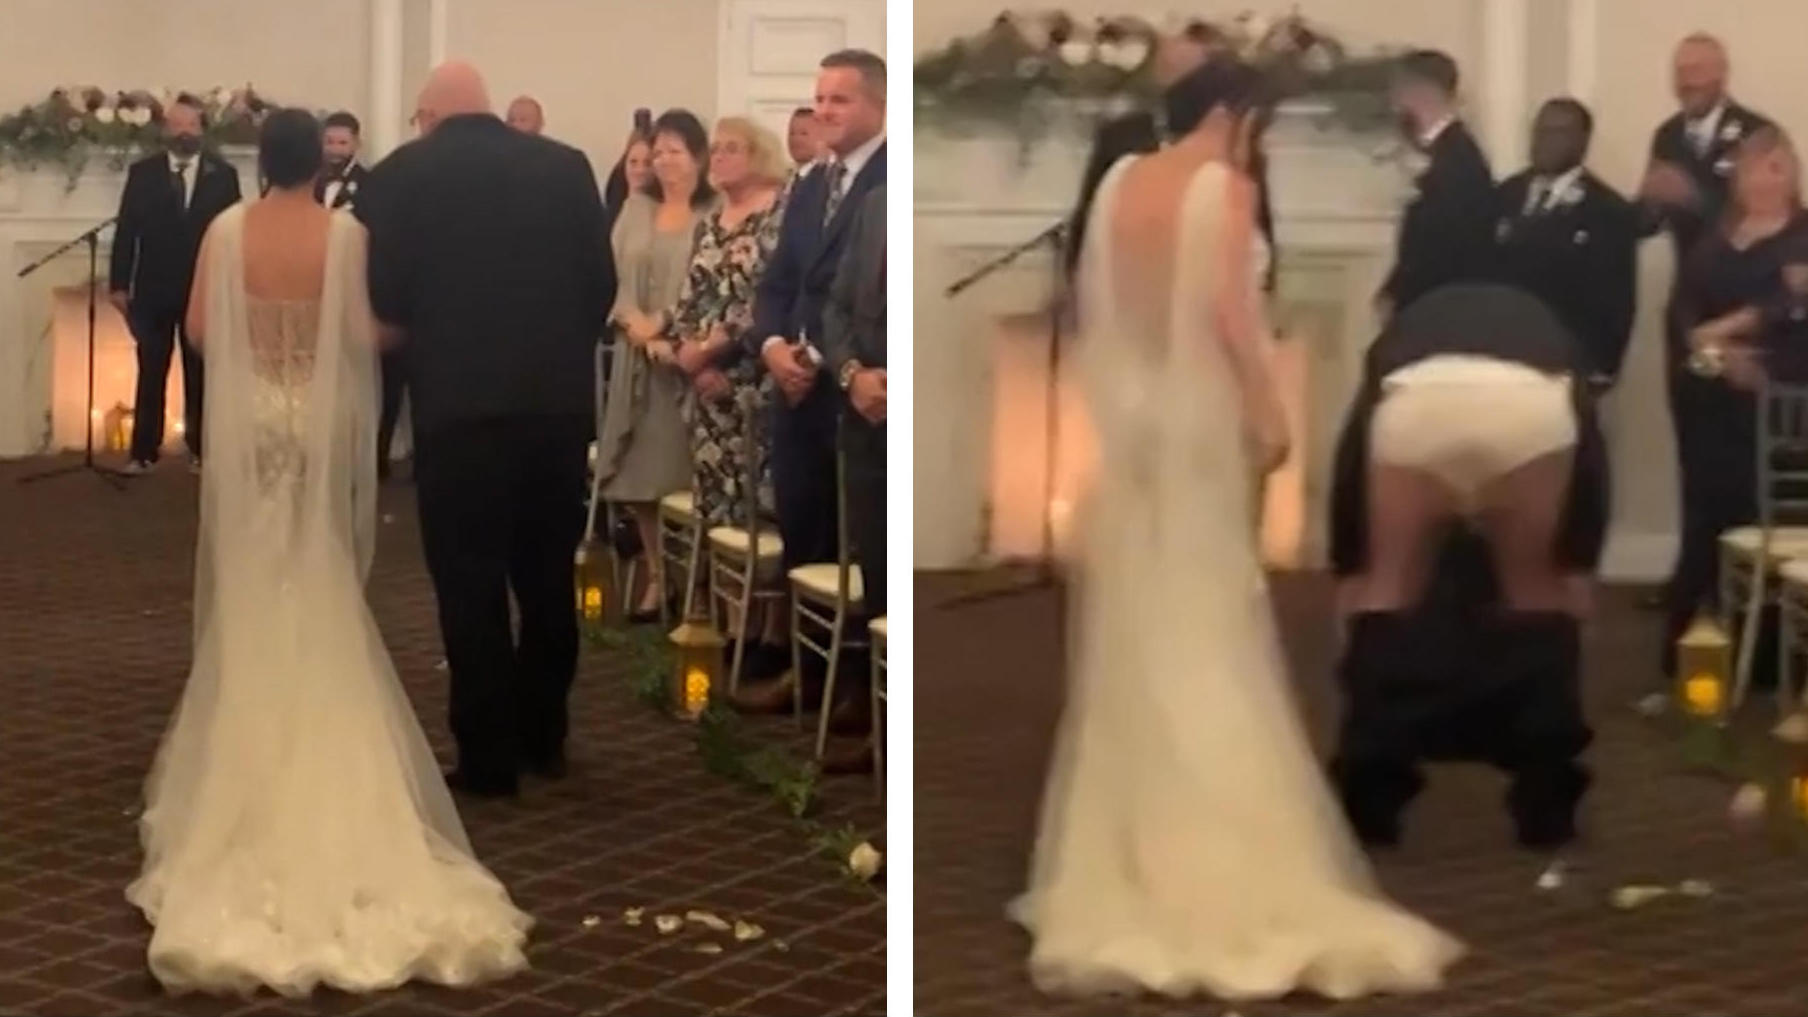 Vater rutscht Hose runter - als er Tochter zum Altar führt Poppes-Blitzer auf der Hochzeit!